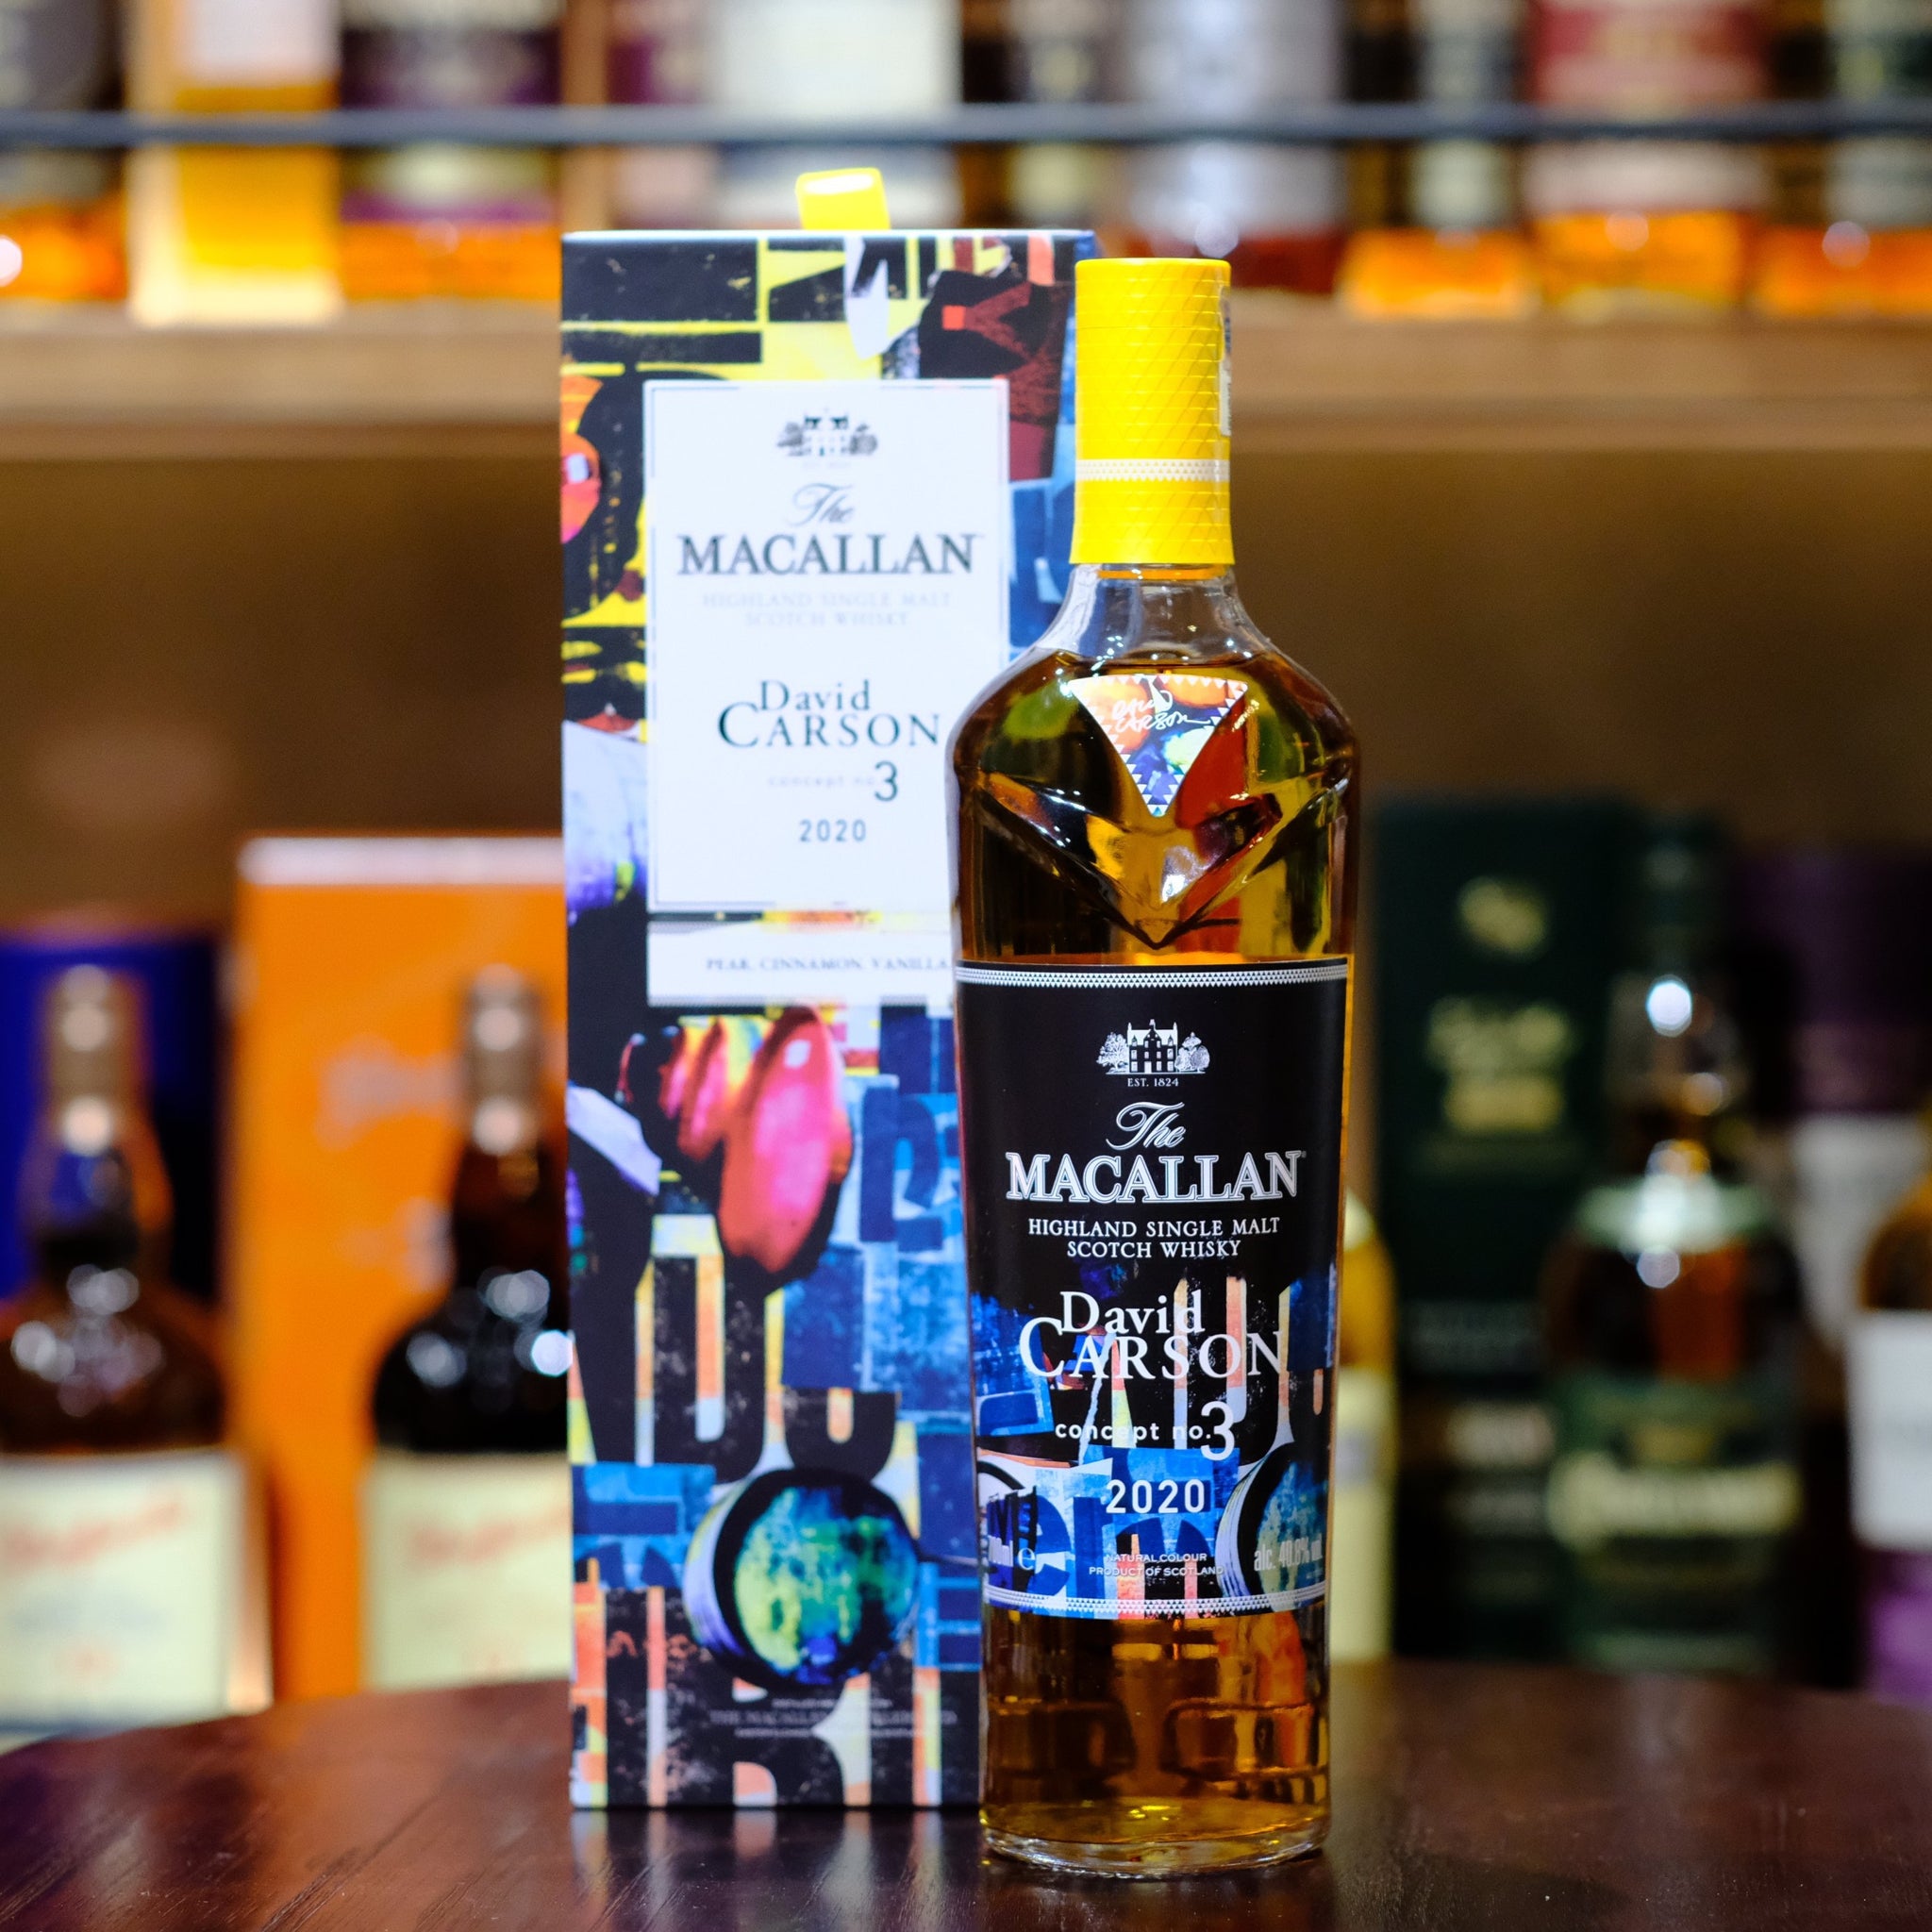 The Macallan Concept No.3 Single Malt Scotch Whisky